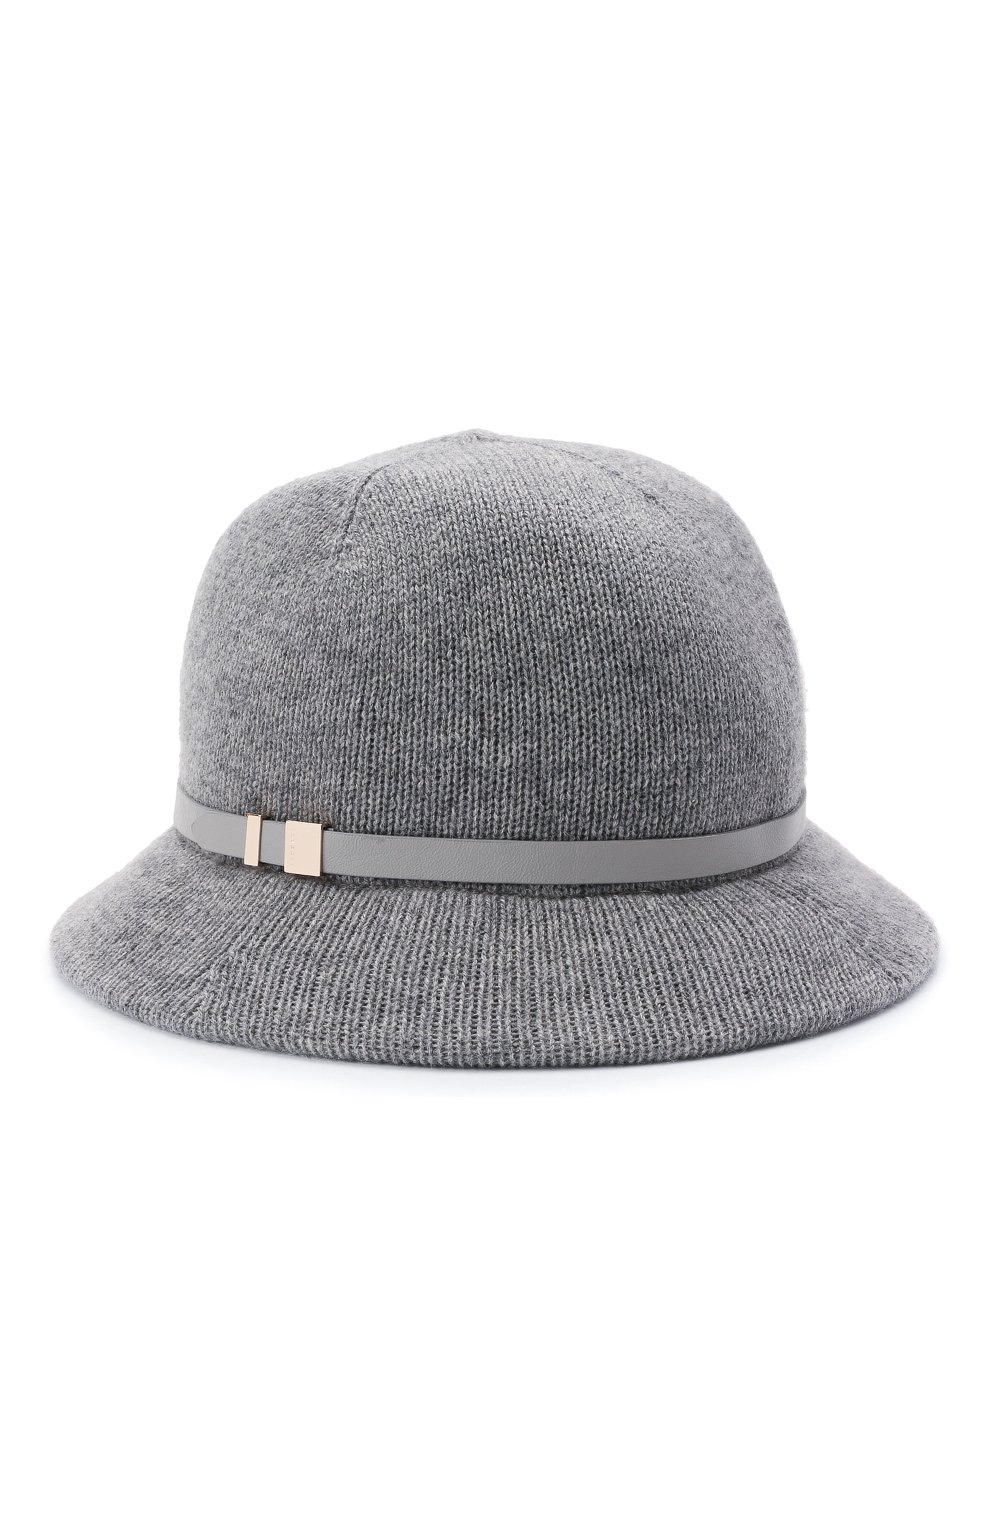 Кашемировая шляпа Inverni 4940 CFM